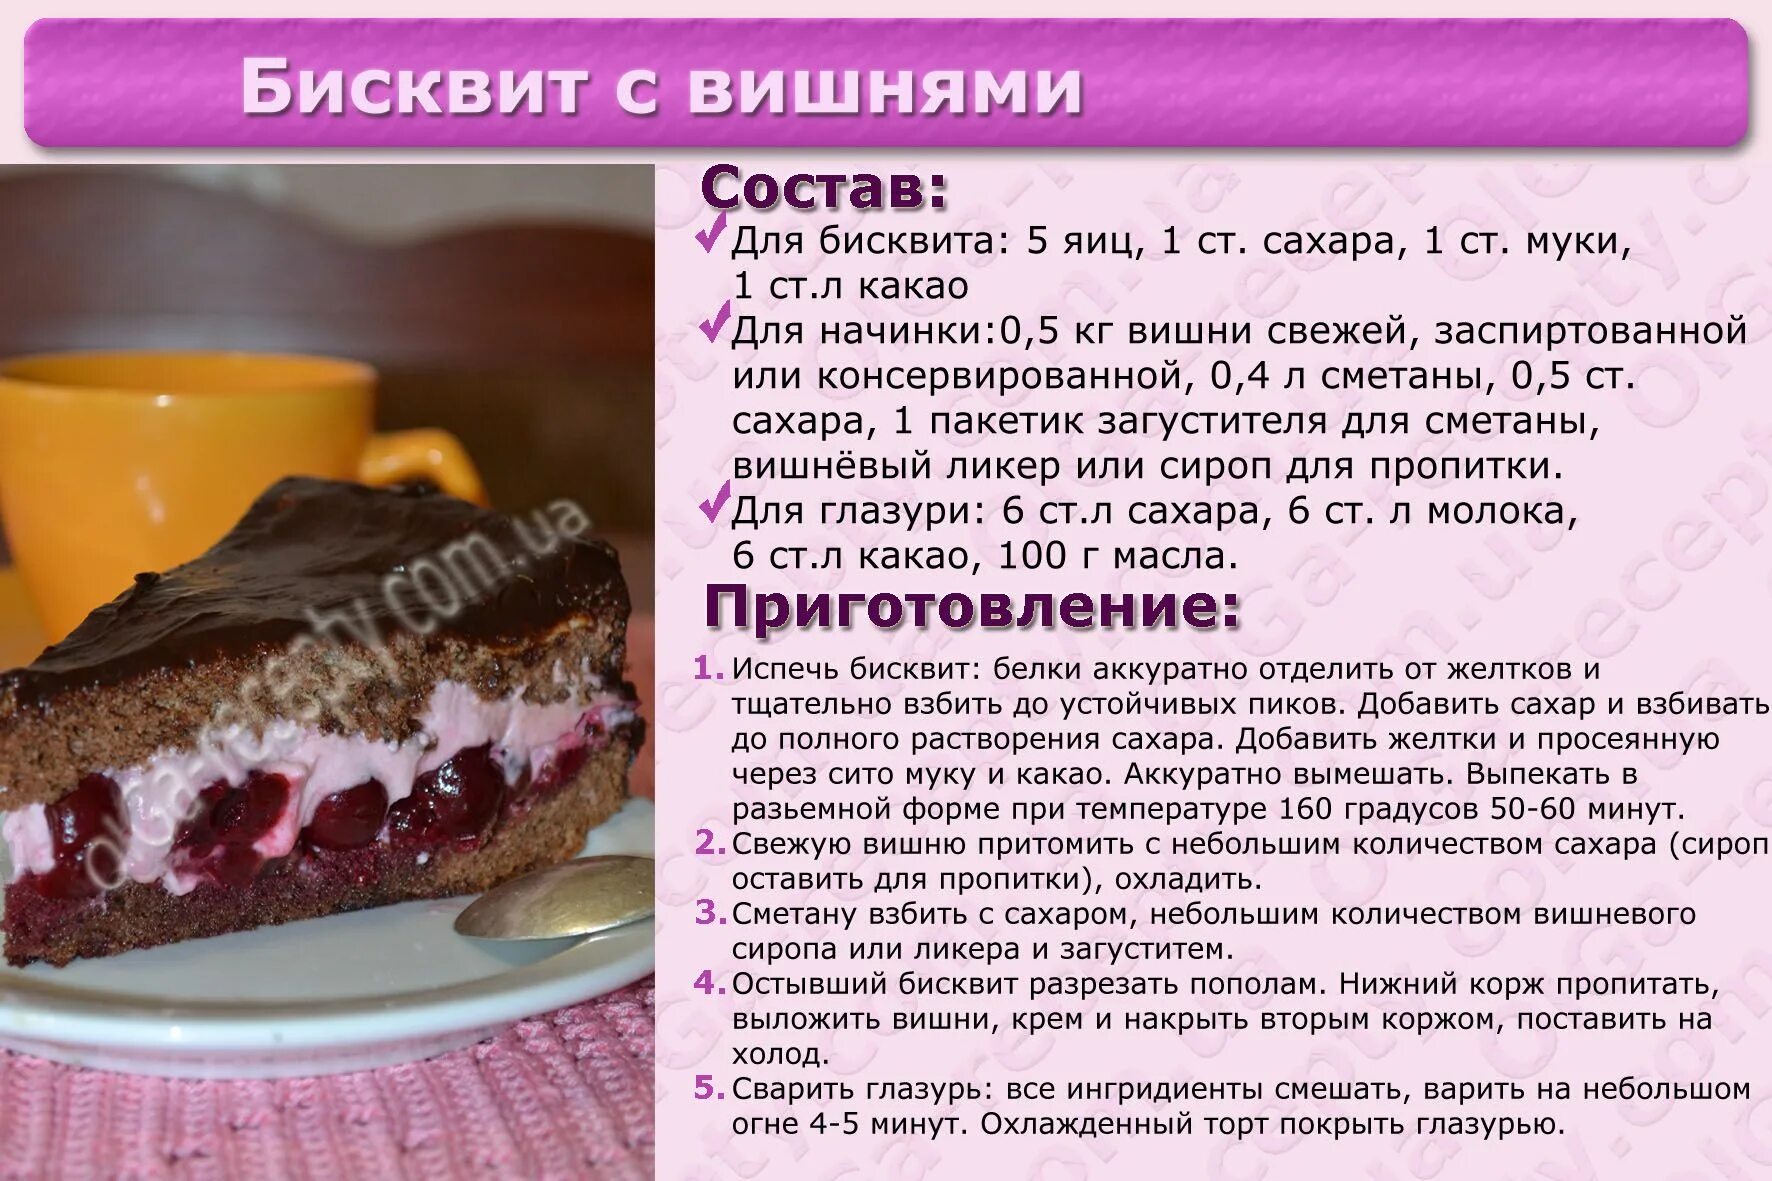 Рецепты без картинки. Рецепты тортов с описанием. Простой рецепт торта. Картинки с рецептами тортов. Кулинарные рецепты тортов с фотографиями.